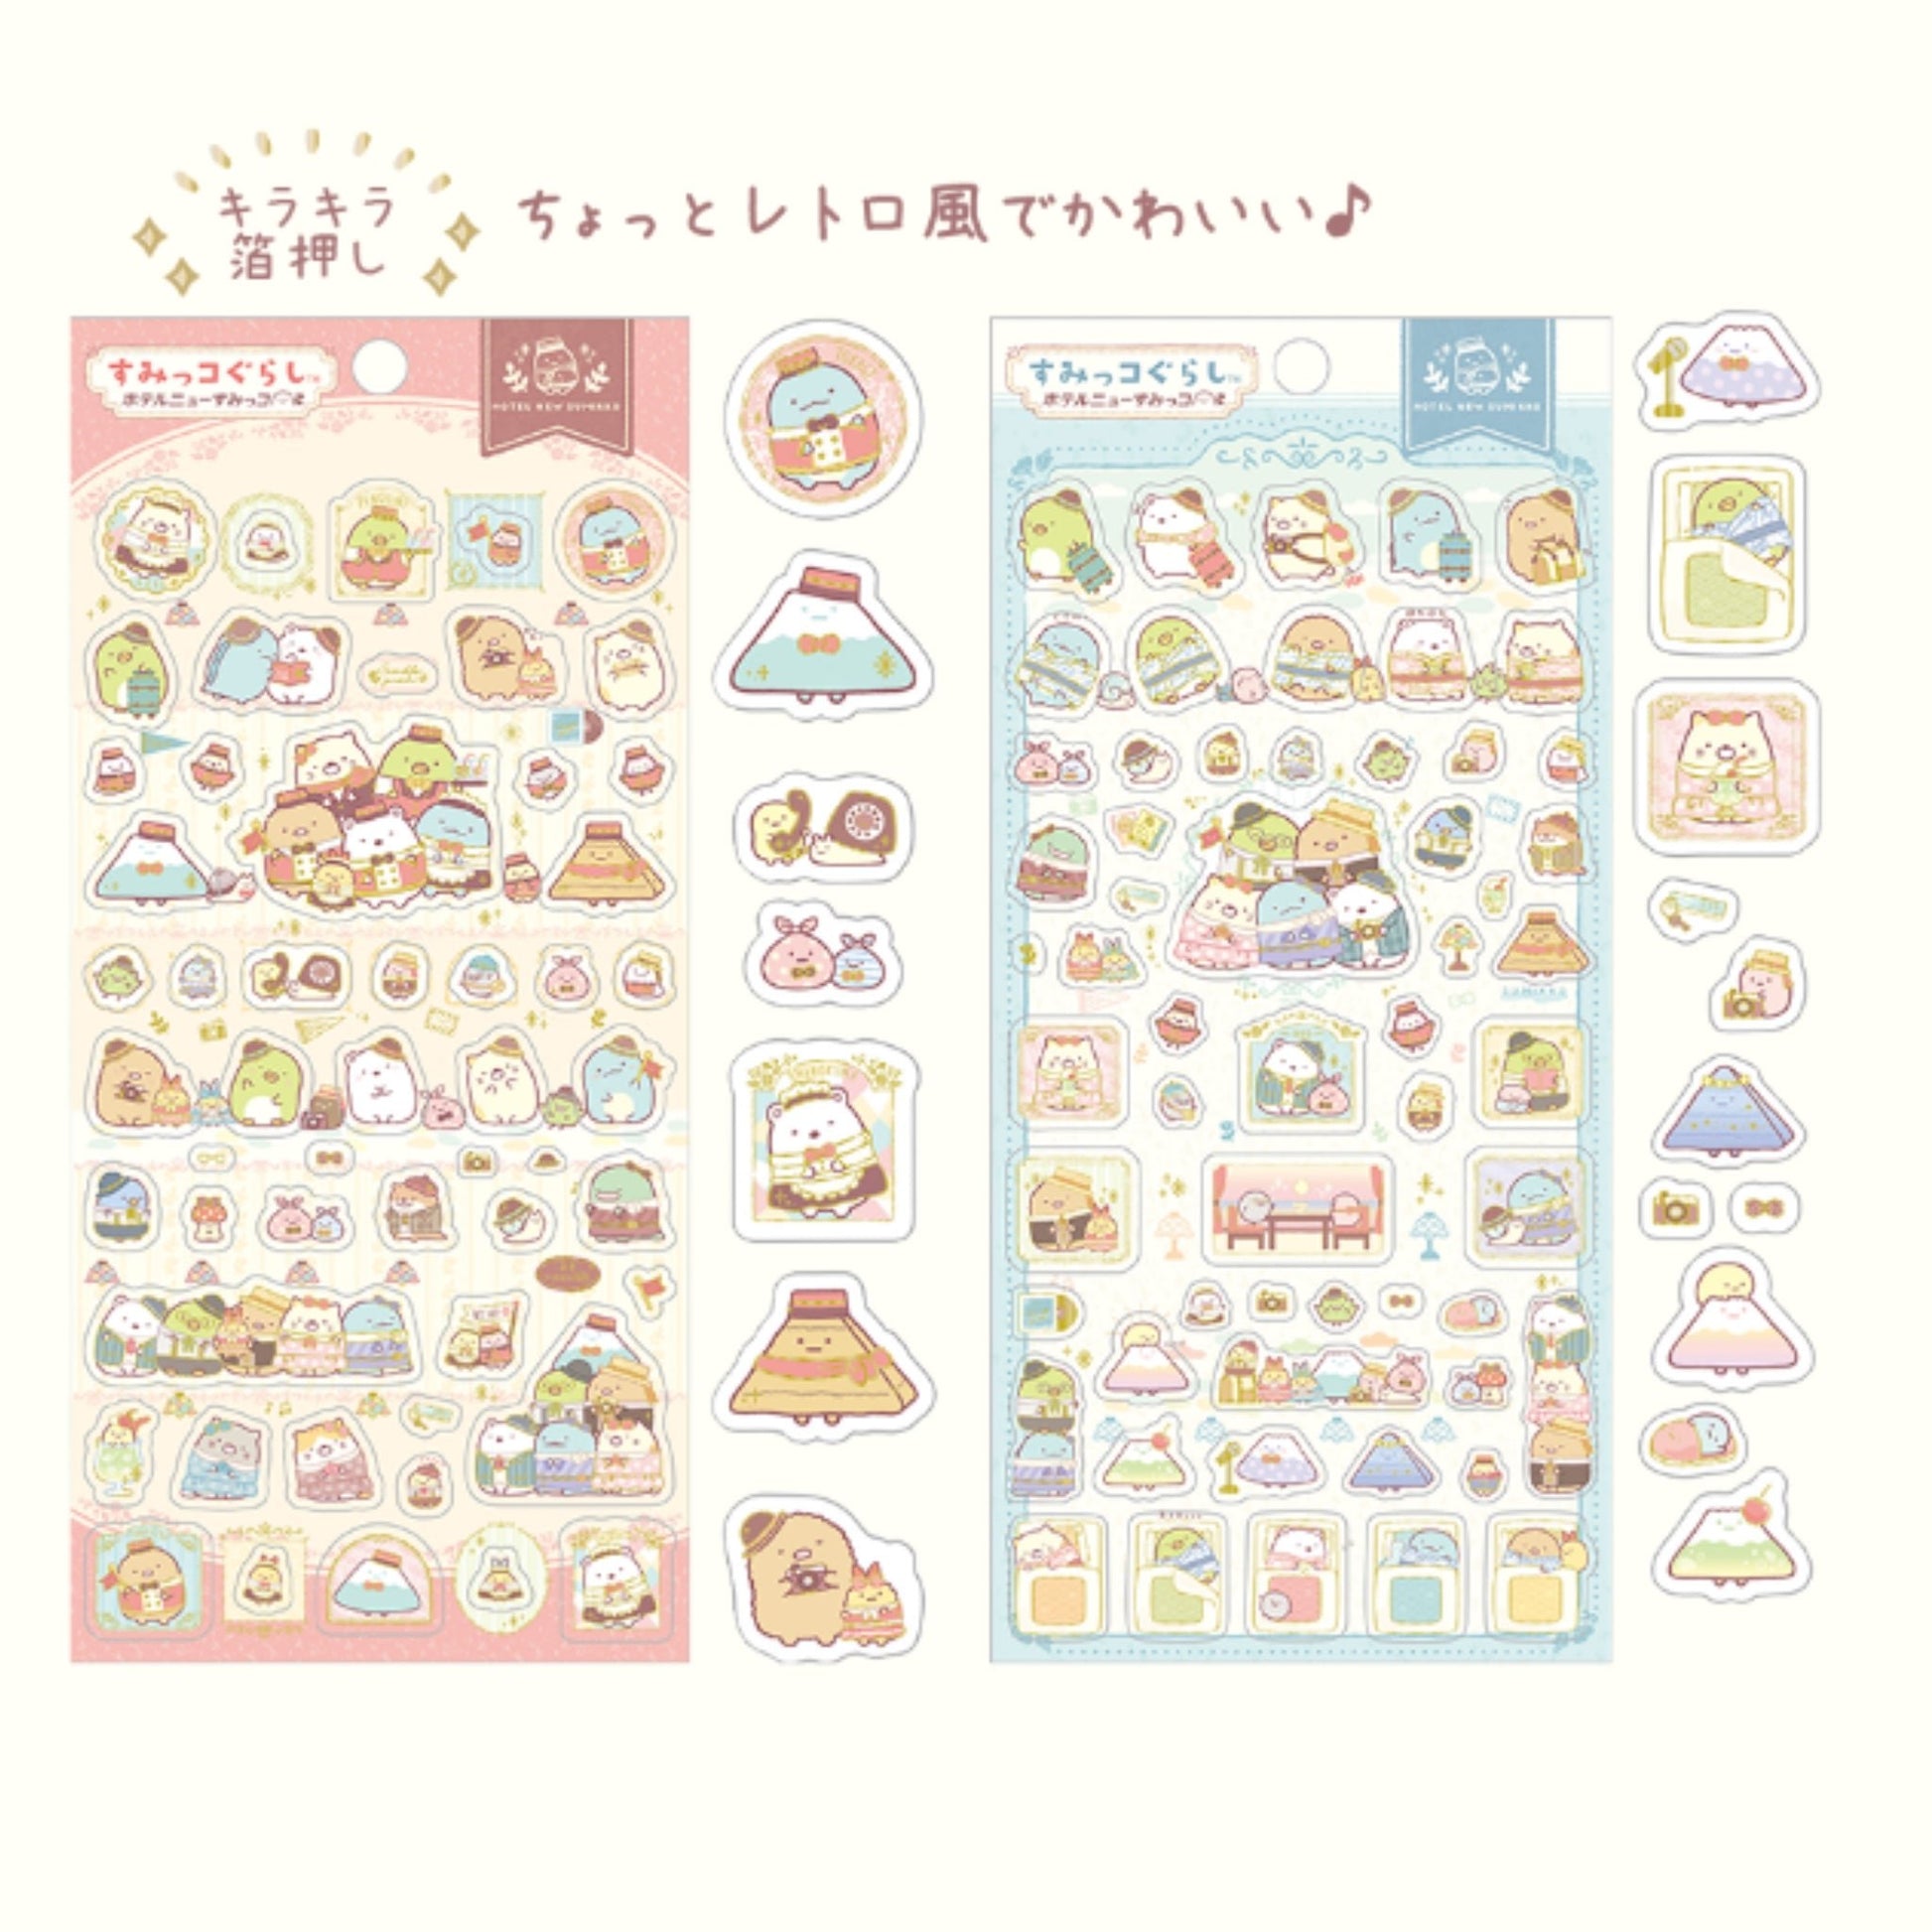 Sumikko Gurashi "Hotel New" Sticker Sheet - Rosey’s Kawaii Shop